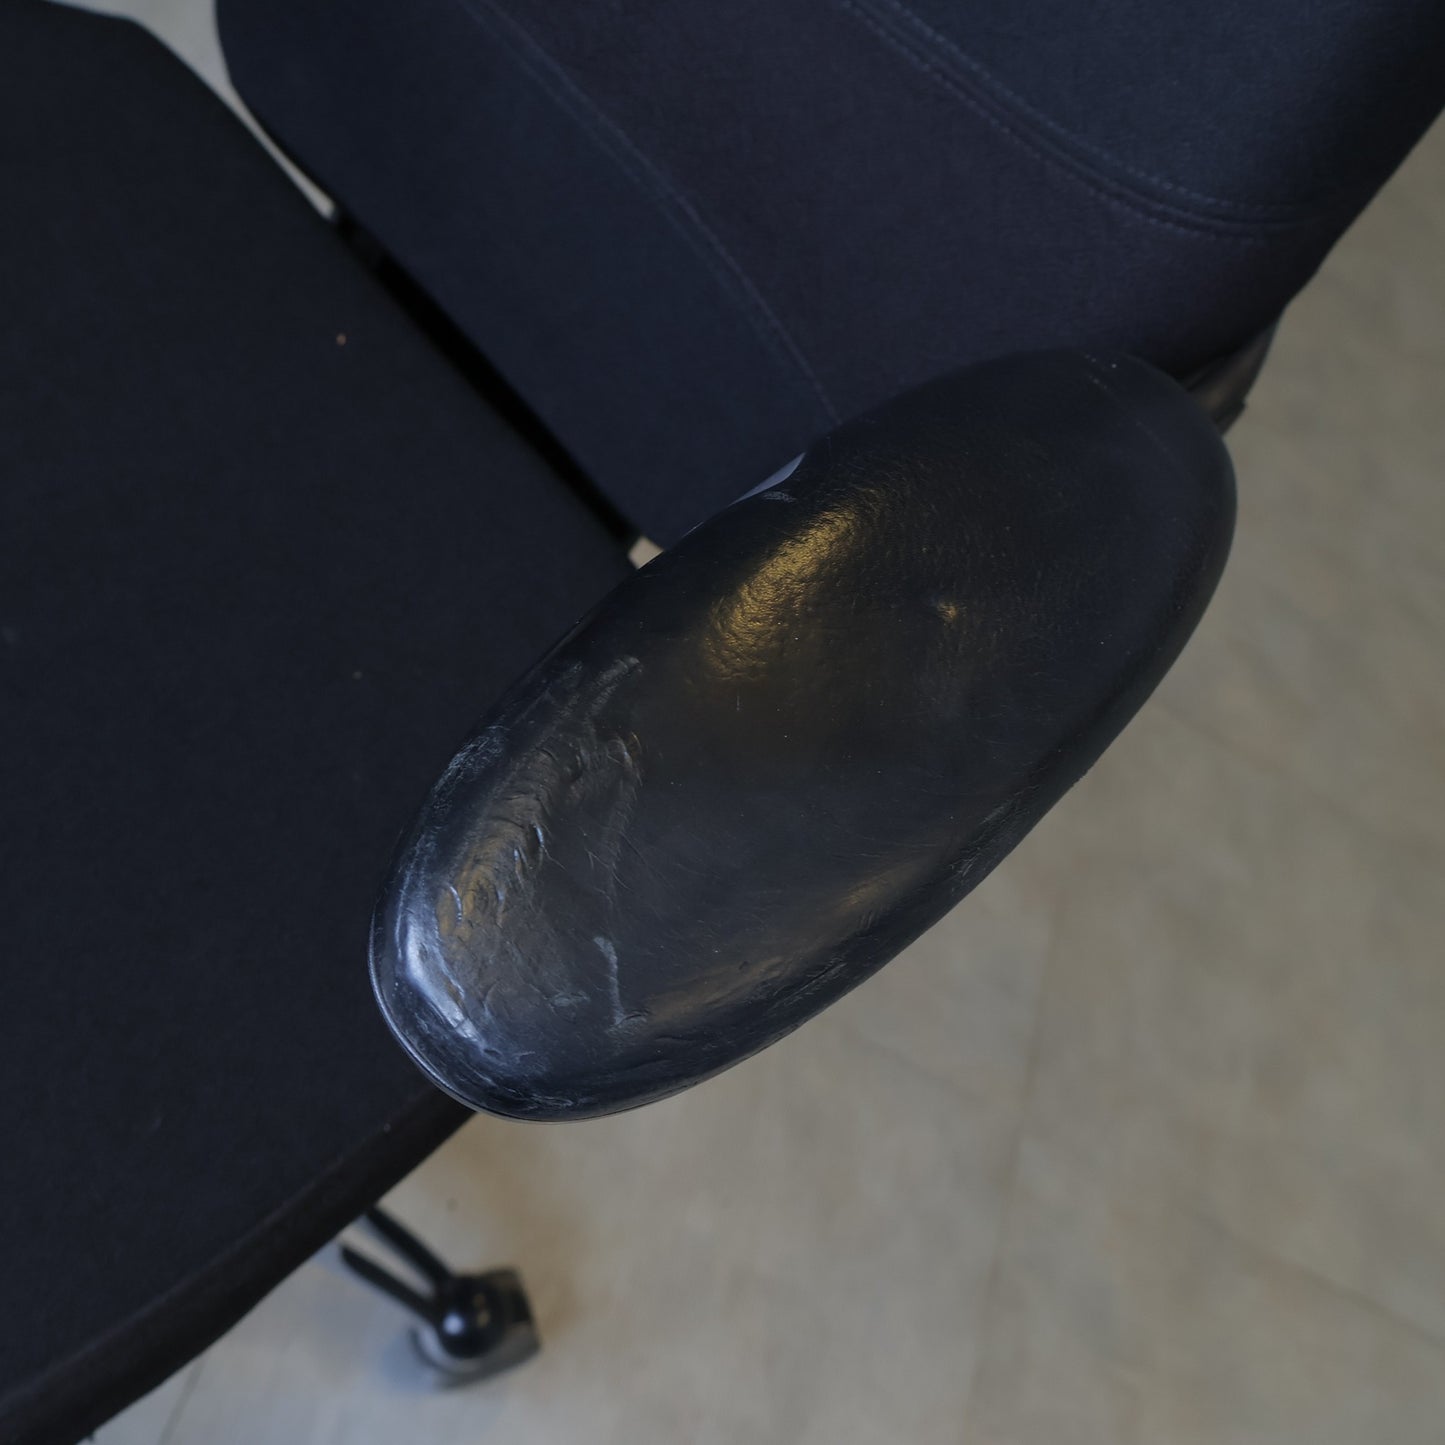 Nyrenset | RH Logic 300 kontorstol med justerbare armlener og nakkestøtte